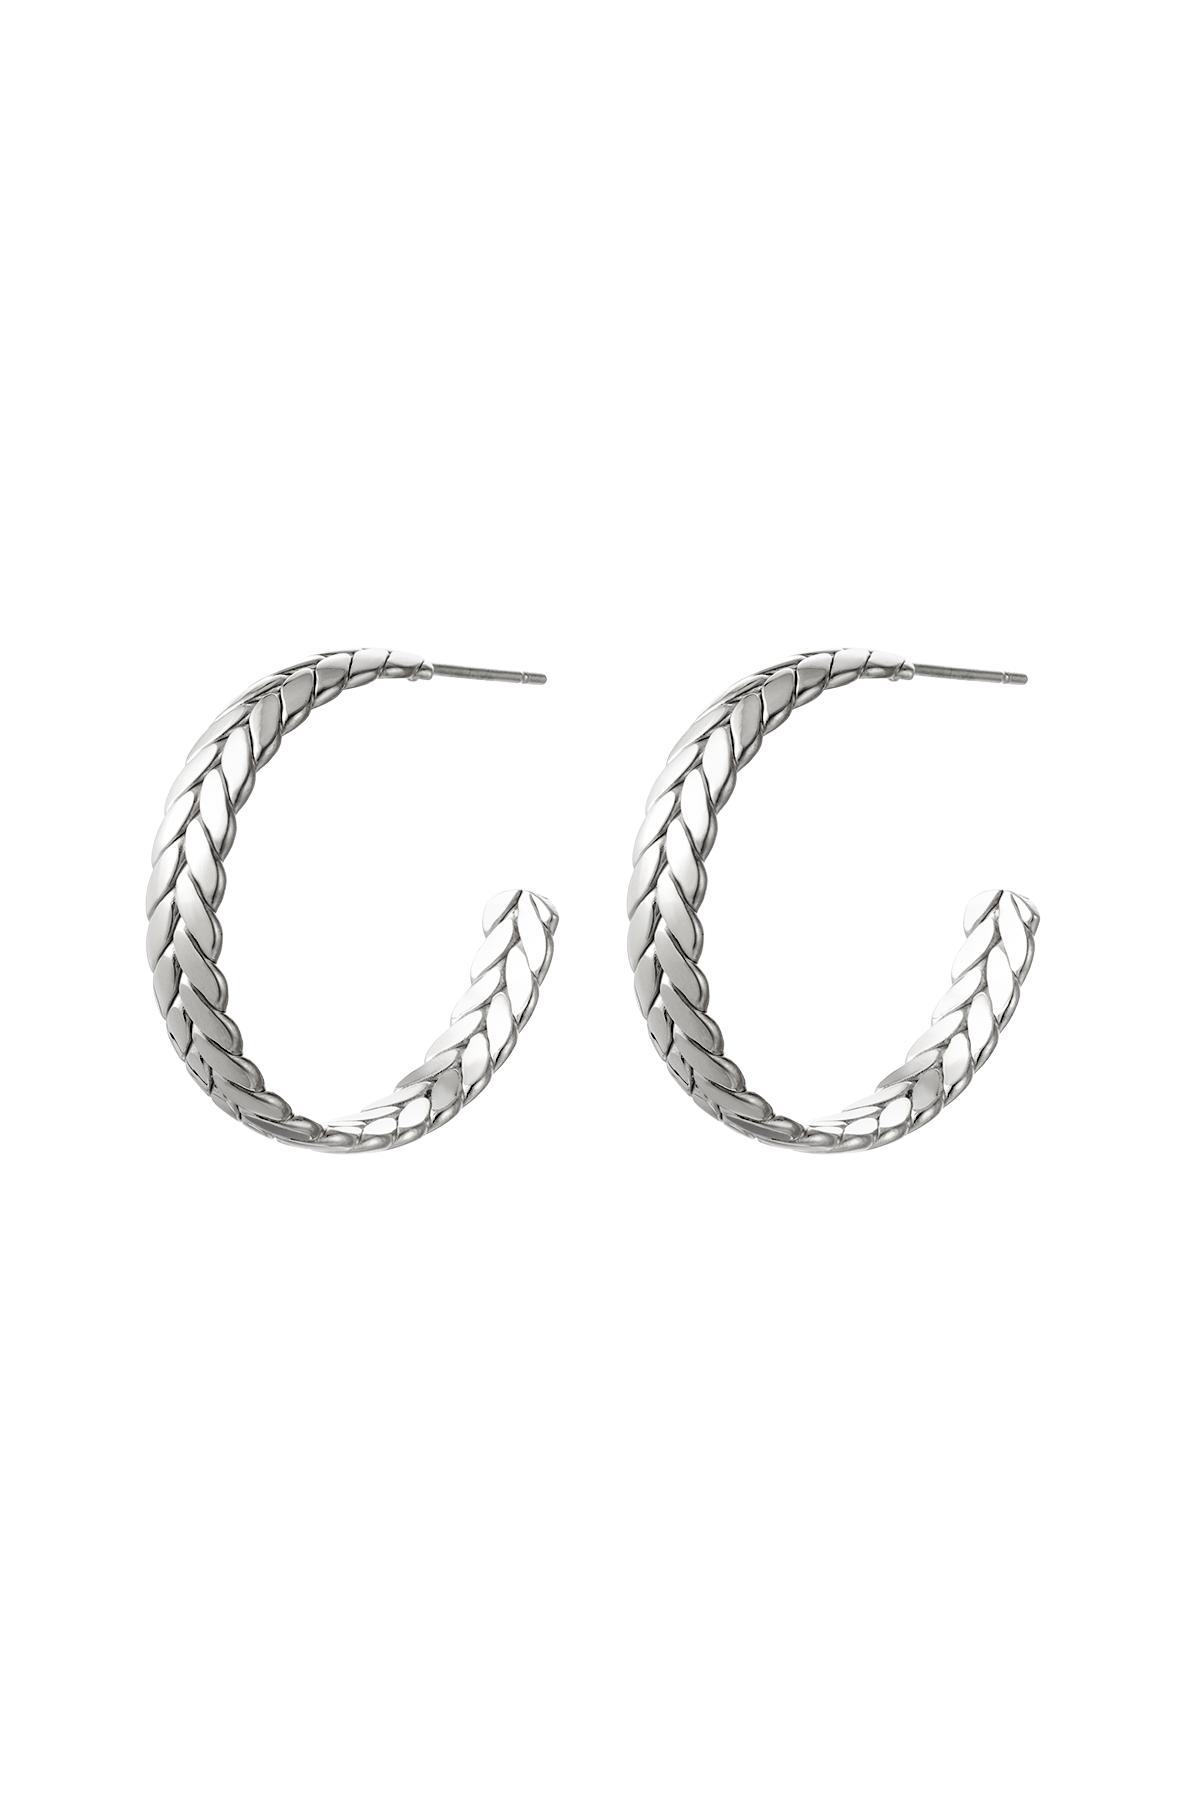 Earrings braided Silver Stainless Steel